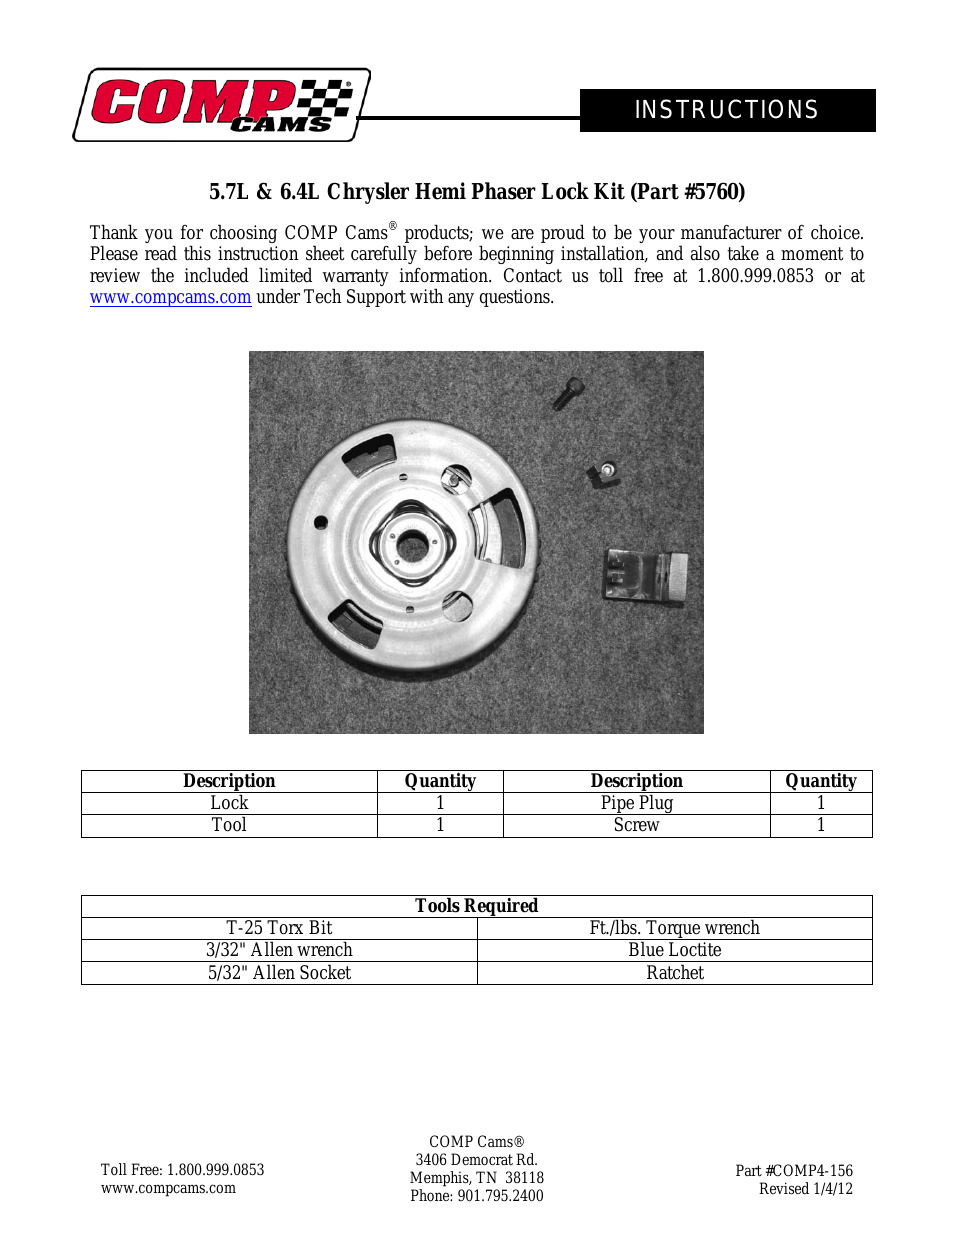 5760 Chrysler Hemi Phaser Lock Kit